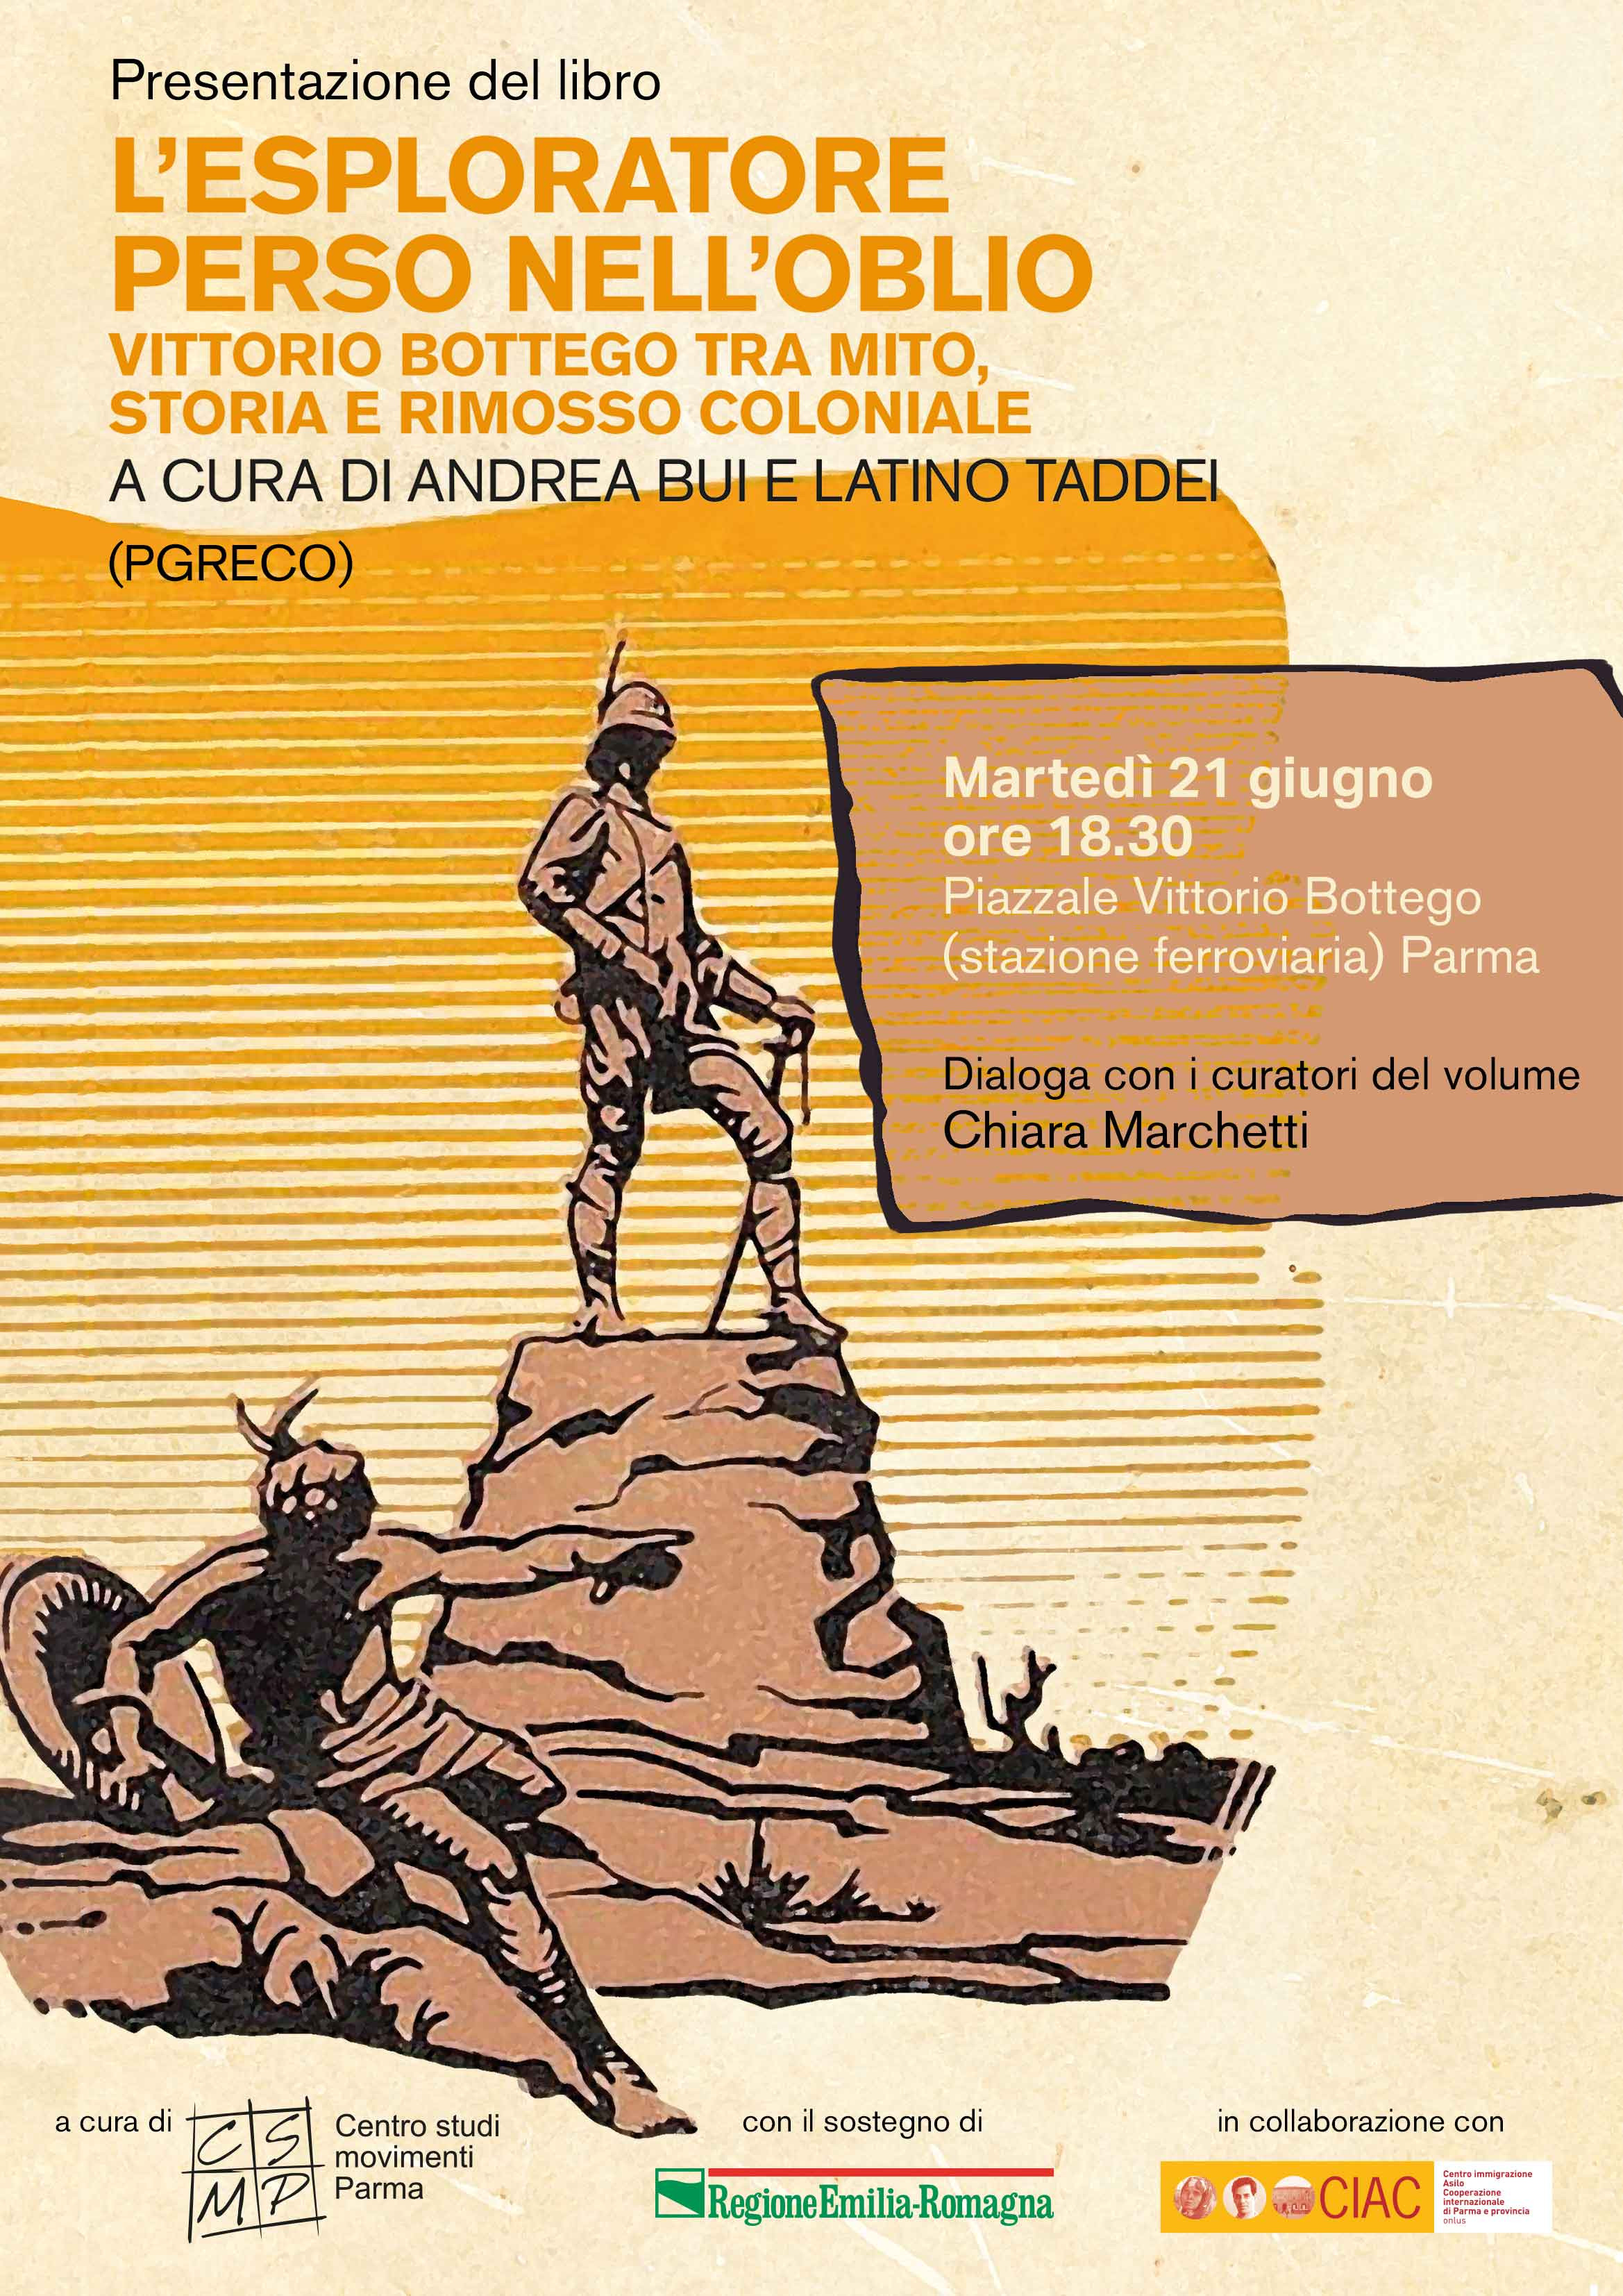 Presentazione del libro “L’esploratore perso nell’oblio. Vittorio Bottego tra mito, storia e rimosso coloniale”